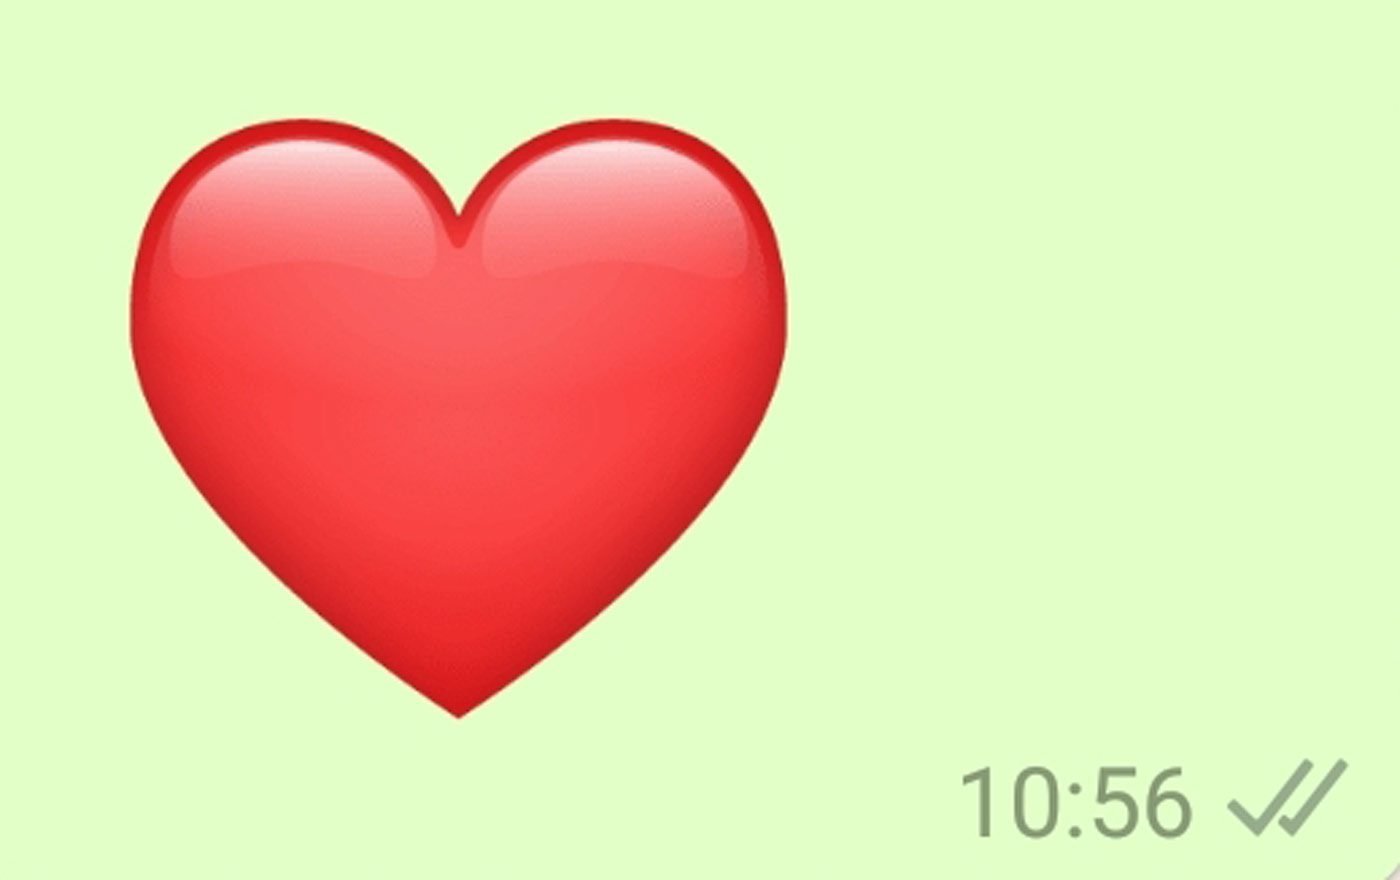 "Das Herz als Zeichen der Liebe ist geblieben und wird auch heute tausendfach verschickt. Valentin hat das erste Emoji, wie wir das heute nennen, erfunden."